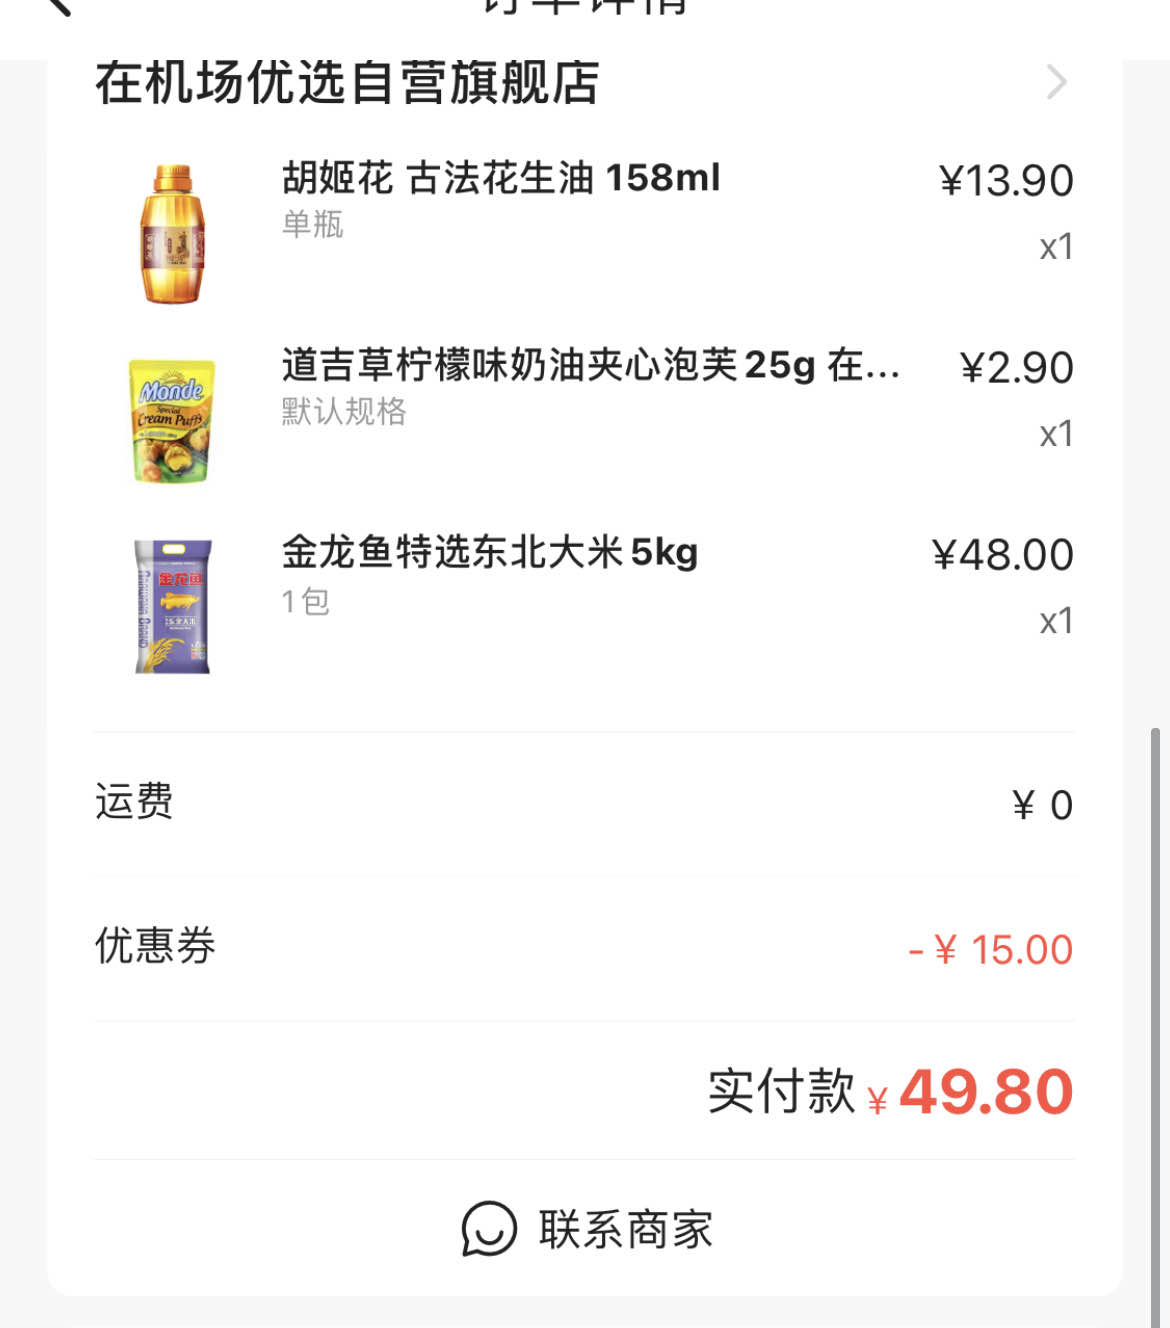 网友发的在机场我买了米和油-还行吧-惠小助(52huixz.com)